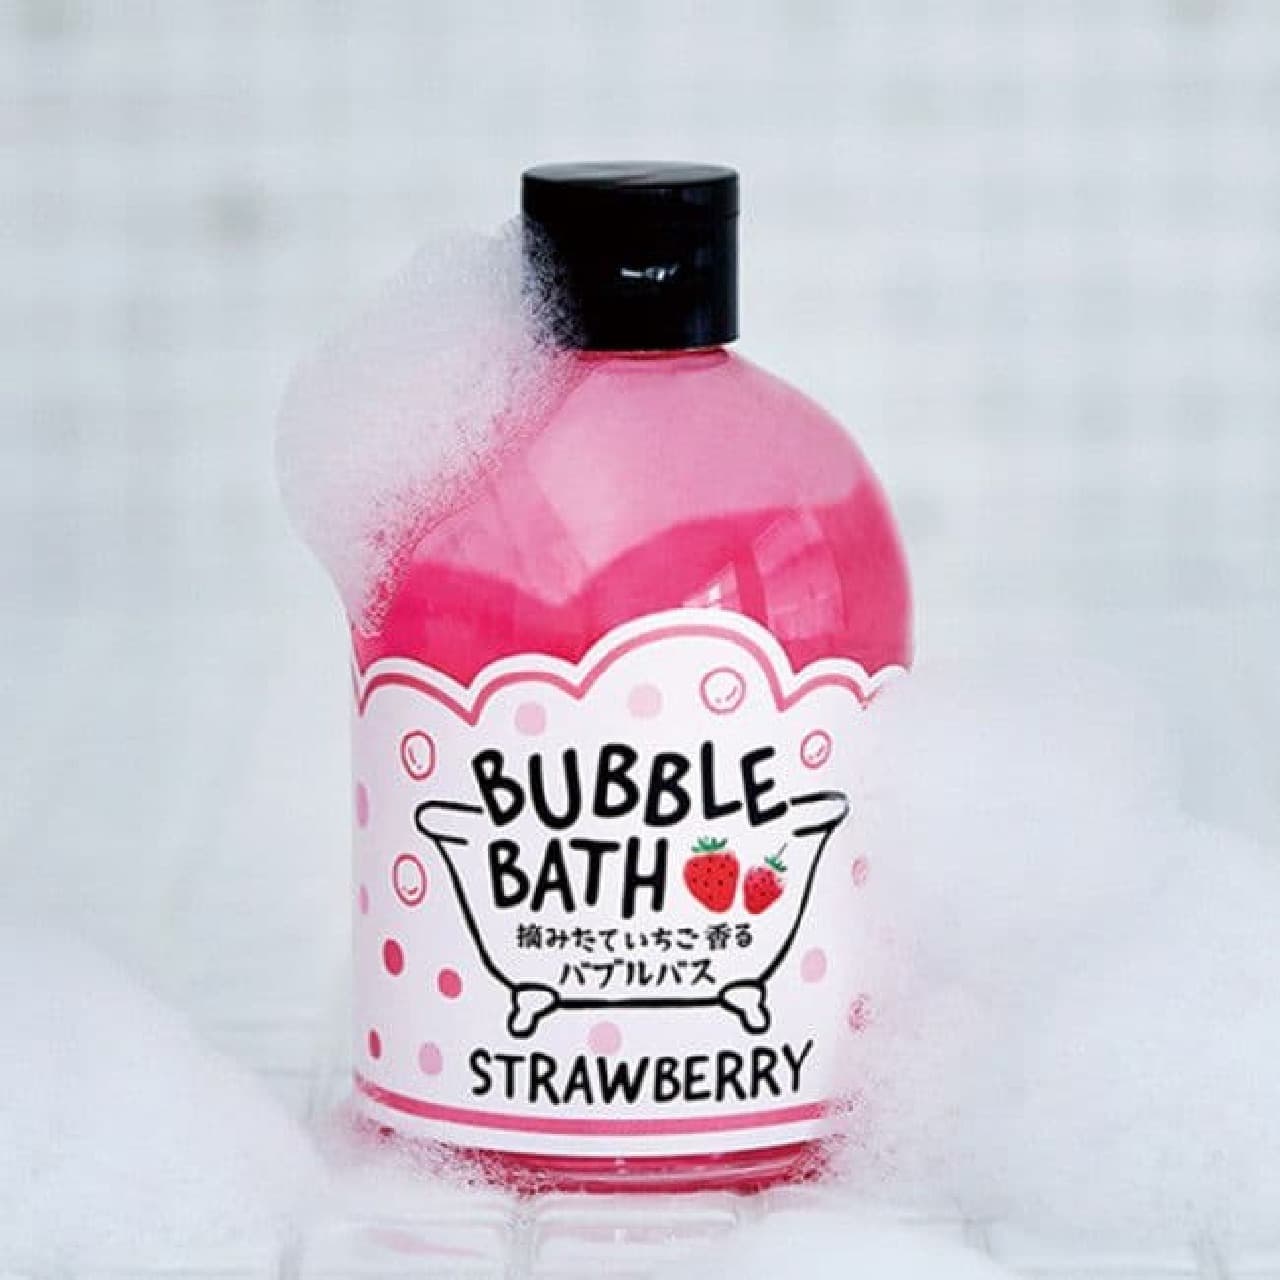 Strawberry CB bubble bath